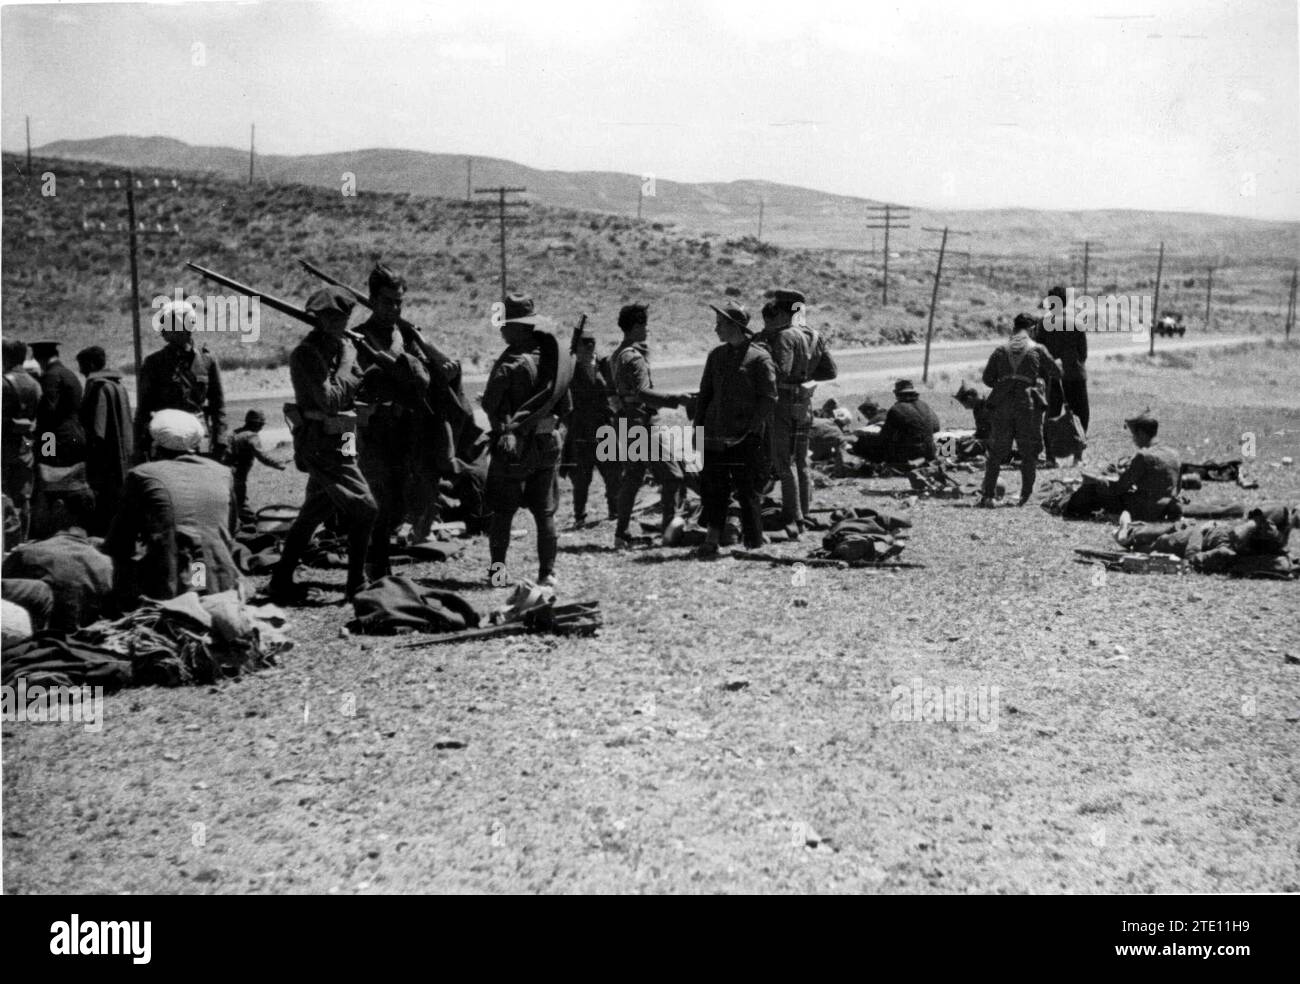 07/31/1936. Truppe che mangiano e riposano negli avamposti di Somosierra. Crediti: Album / Archivo ABC / Alfonso Foto Stock